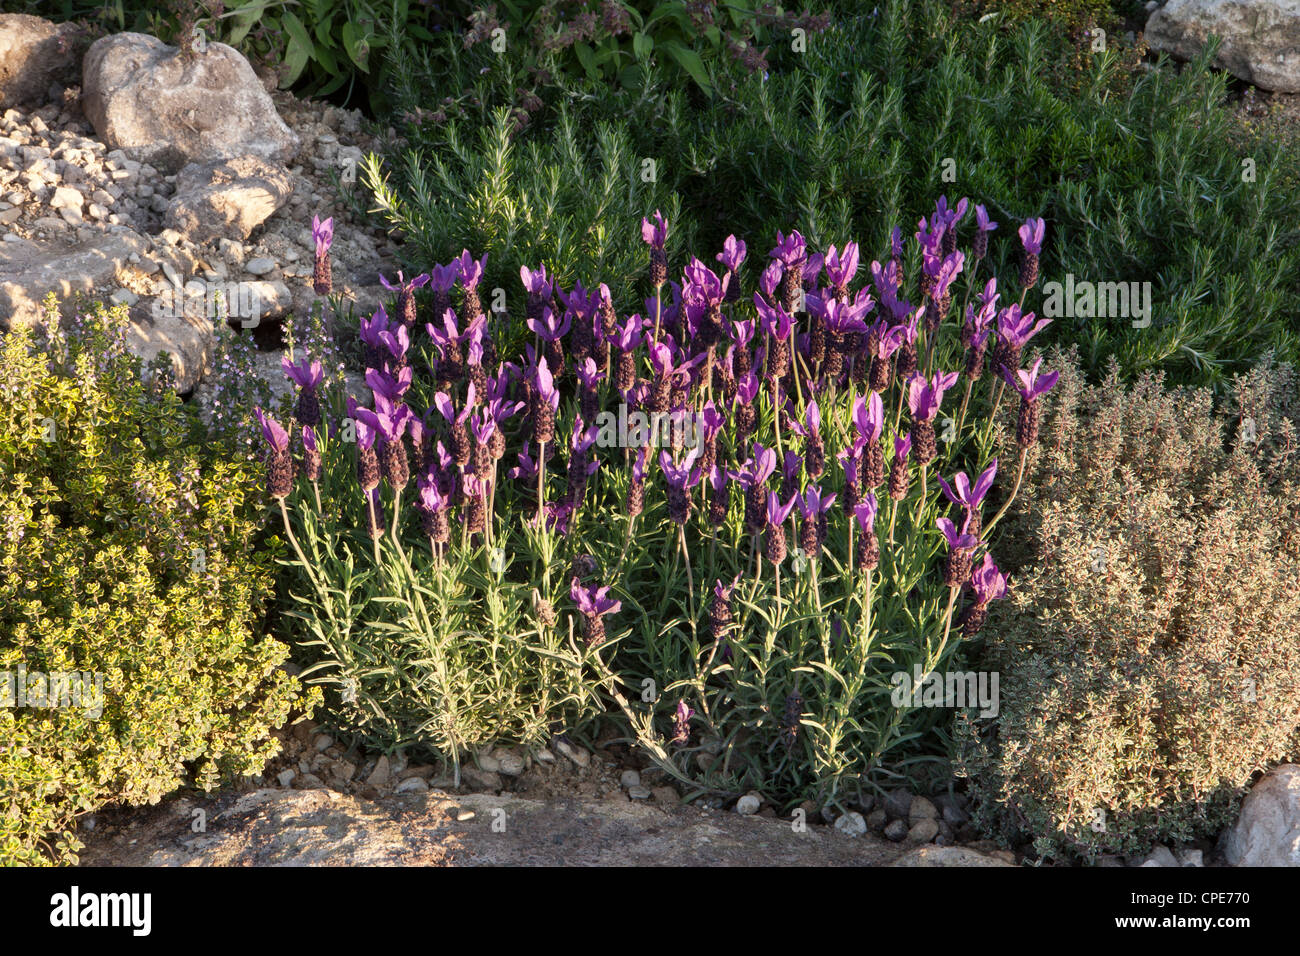 Les plantes de lavande fleurissent et poussent dans une rocarie aux herbes avec du thym et du romarin dans un jardin méditerranéen Royaume-Uni Banque D'Images